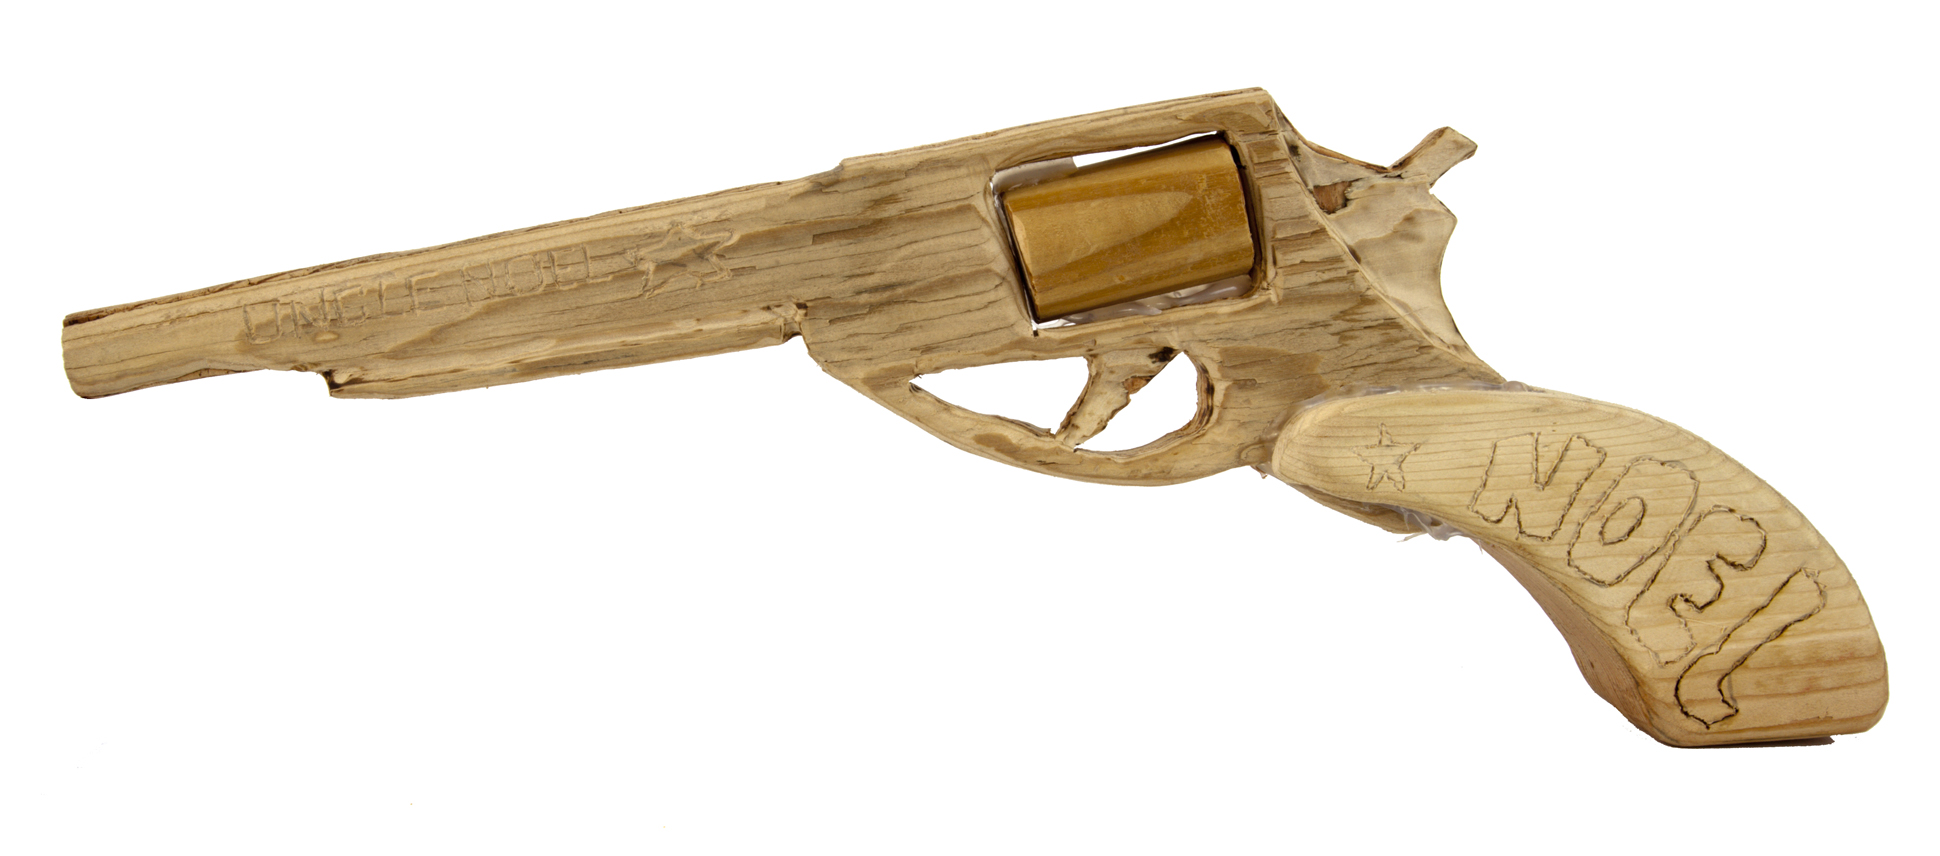 Wooden gun decoration